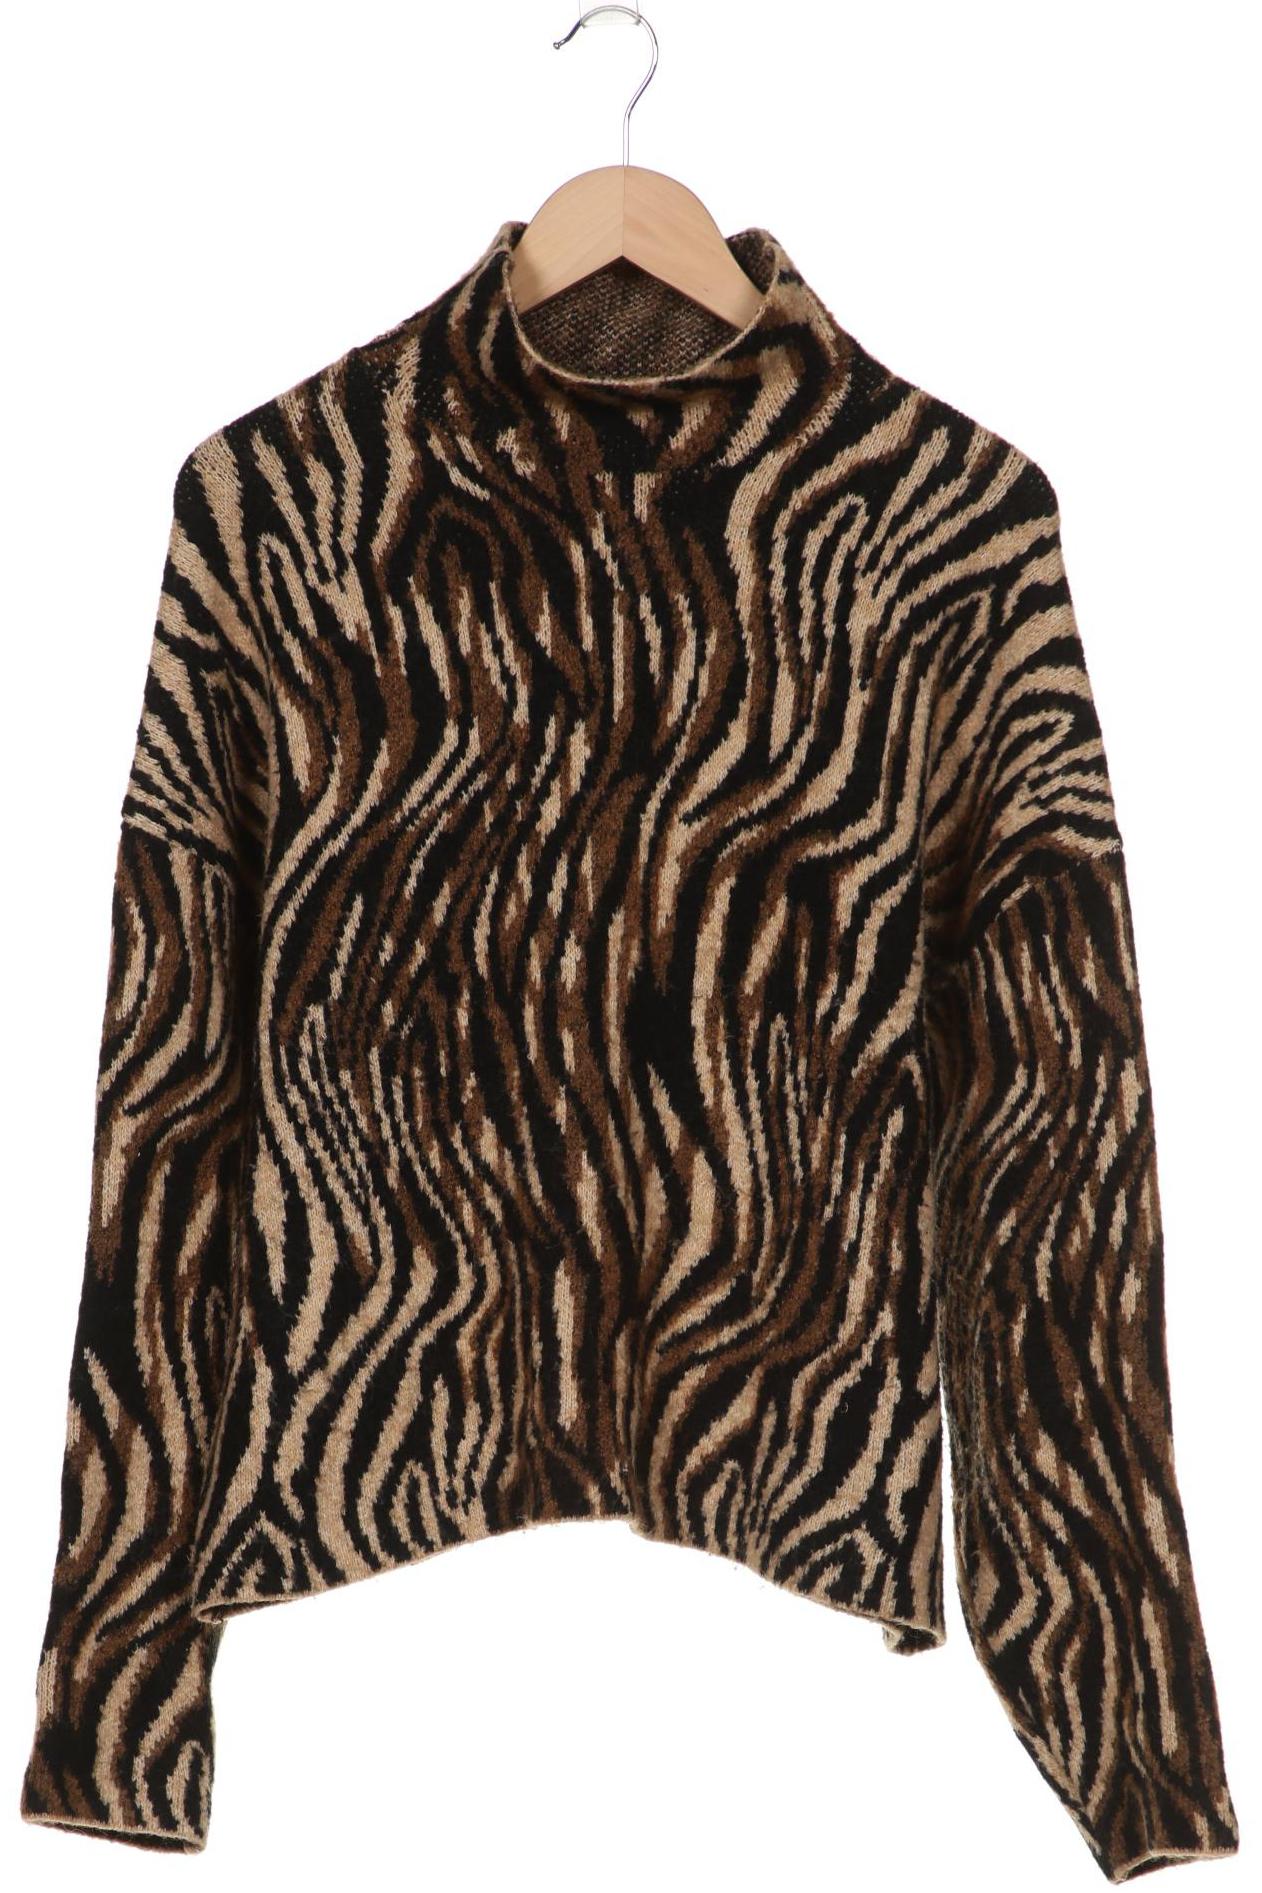 Zara Damen Pullover, braun, Gr. 38 von ZARA